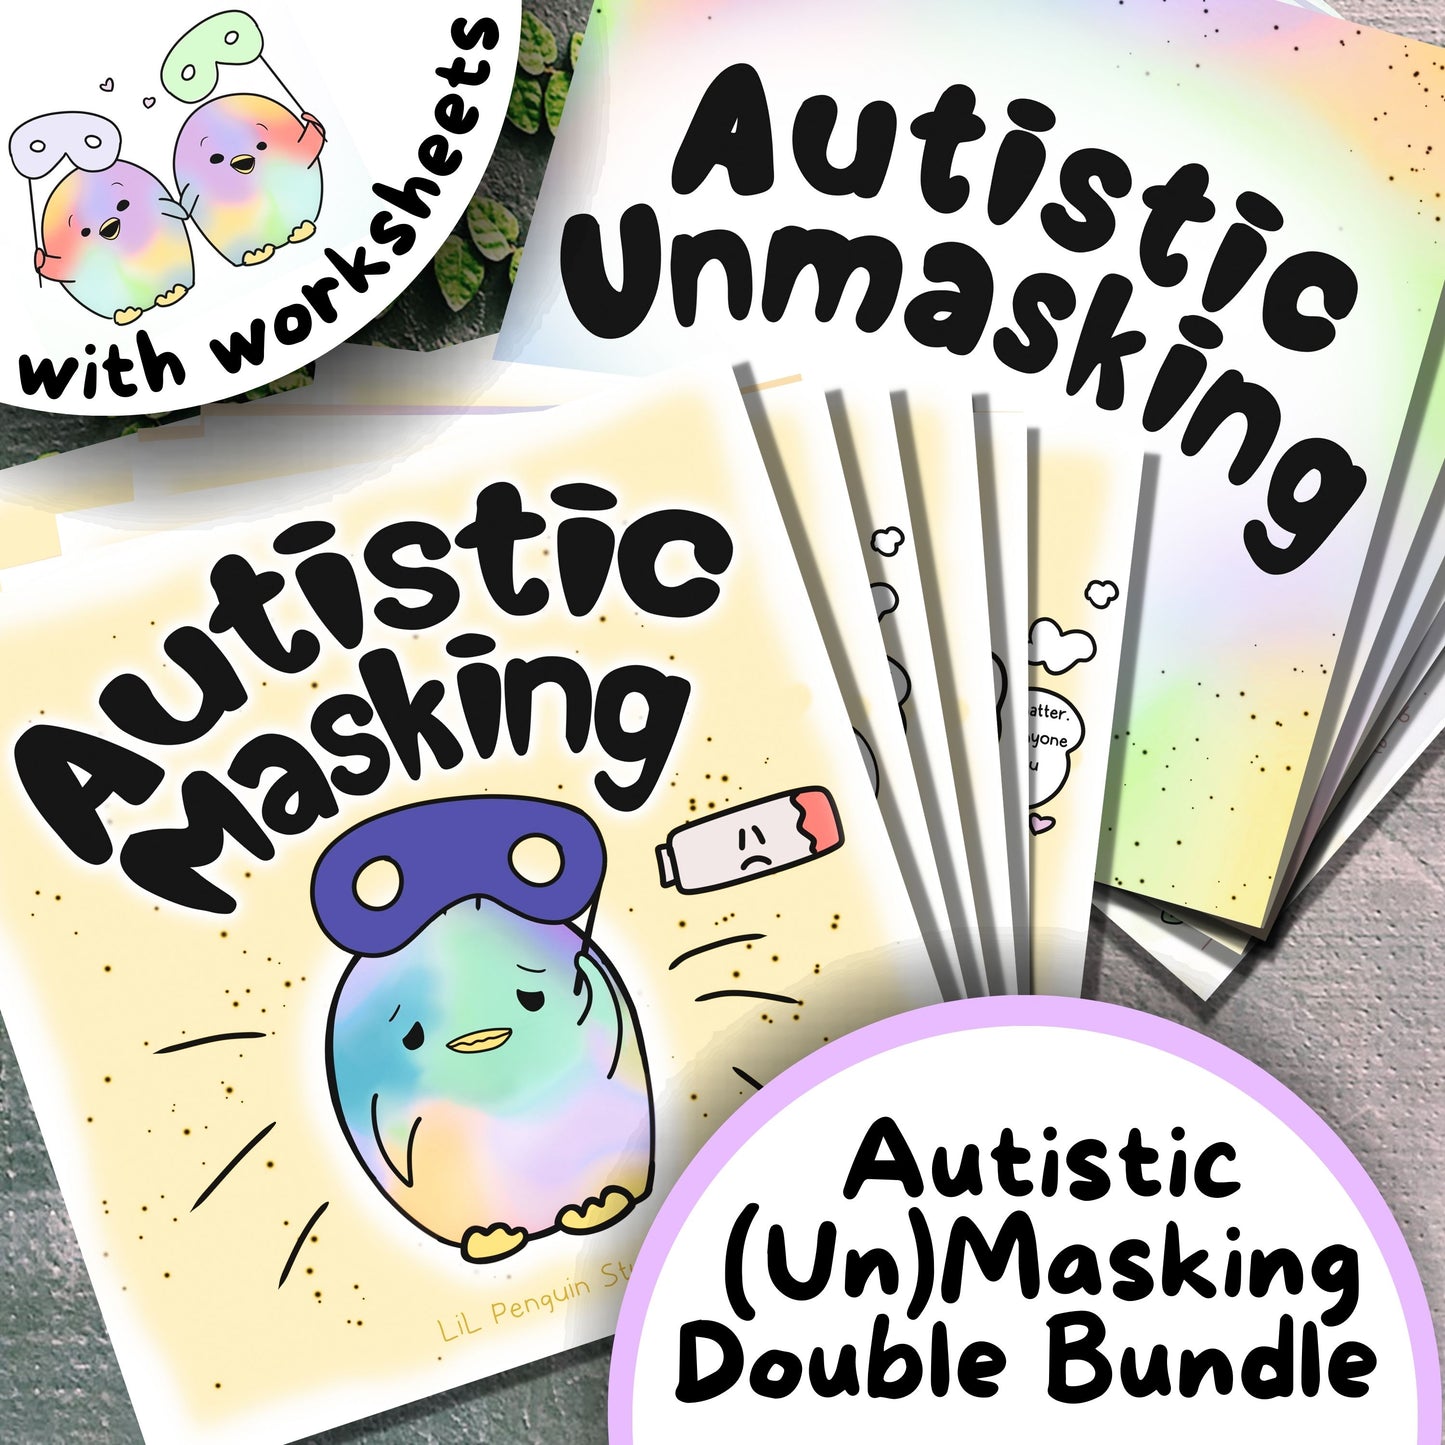 'Autistic (Un)masking' Double Bundle - Personal Use